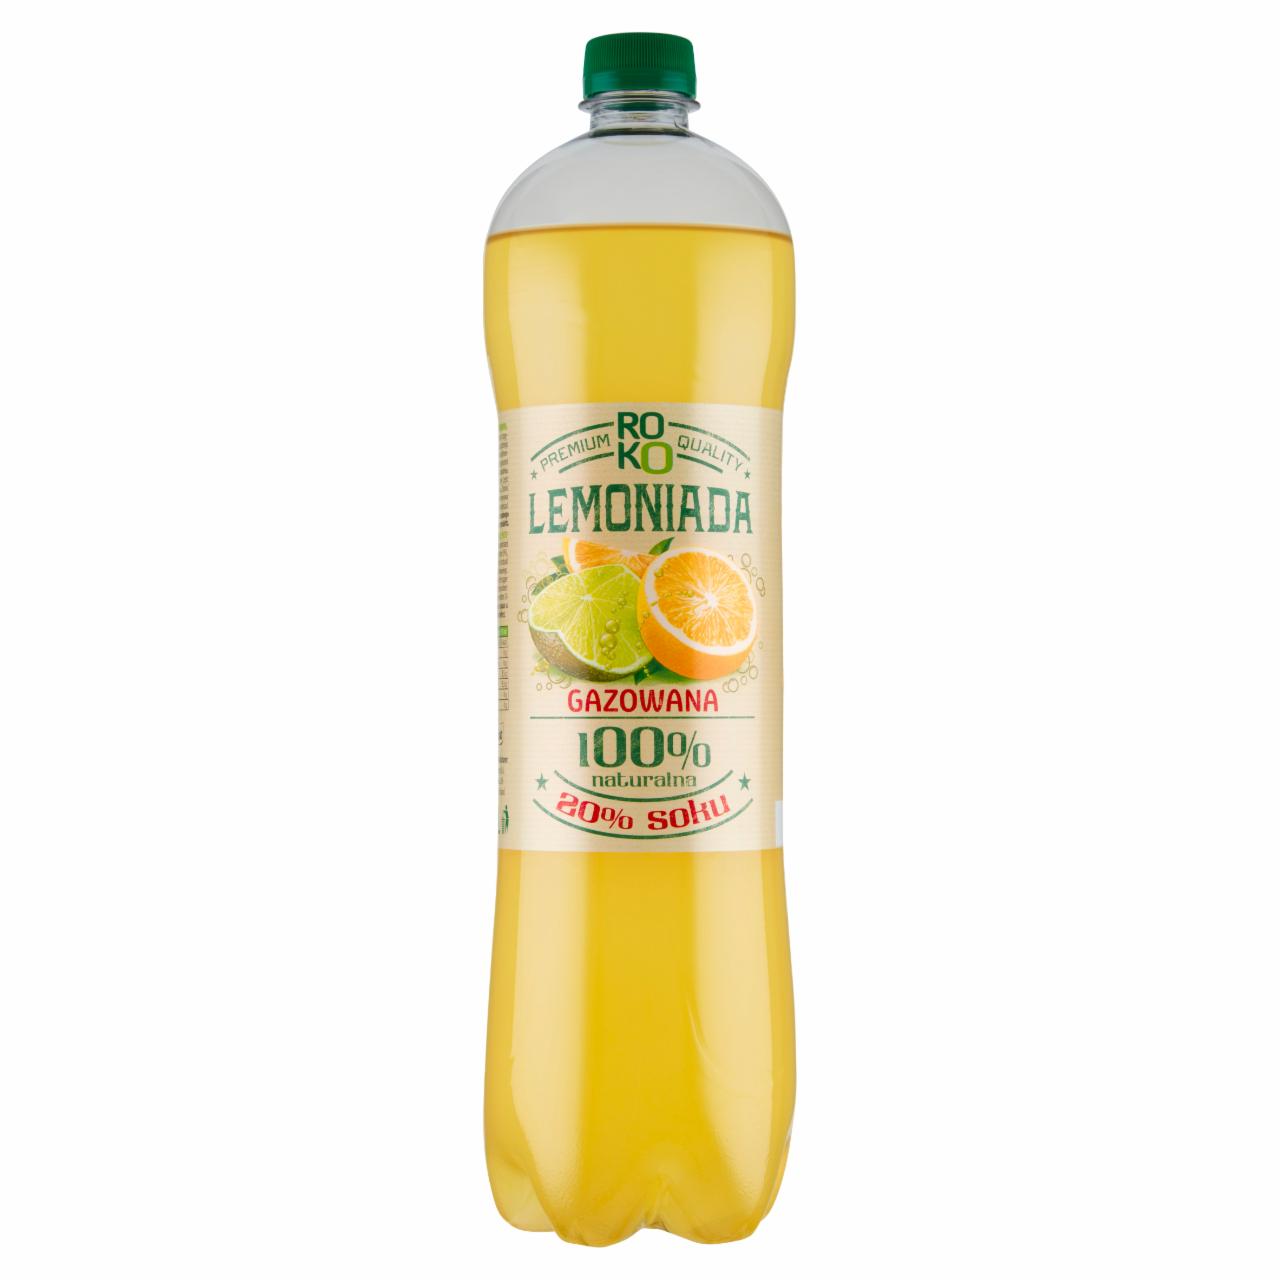 Zdjęcia - ROKO Lemoniada gazowana o smaku cytrynowo-limonkowym 1,25 l